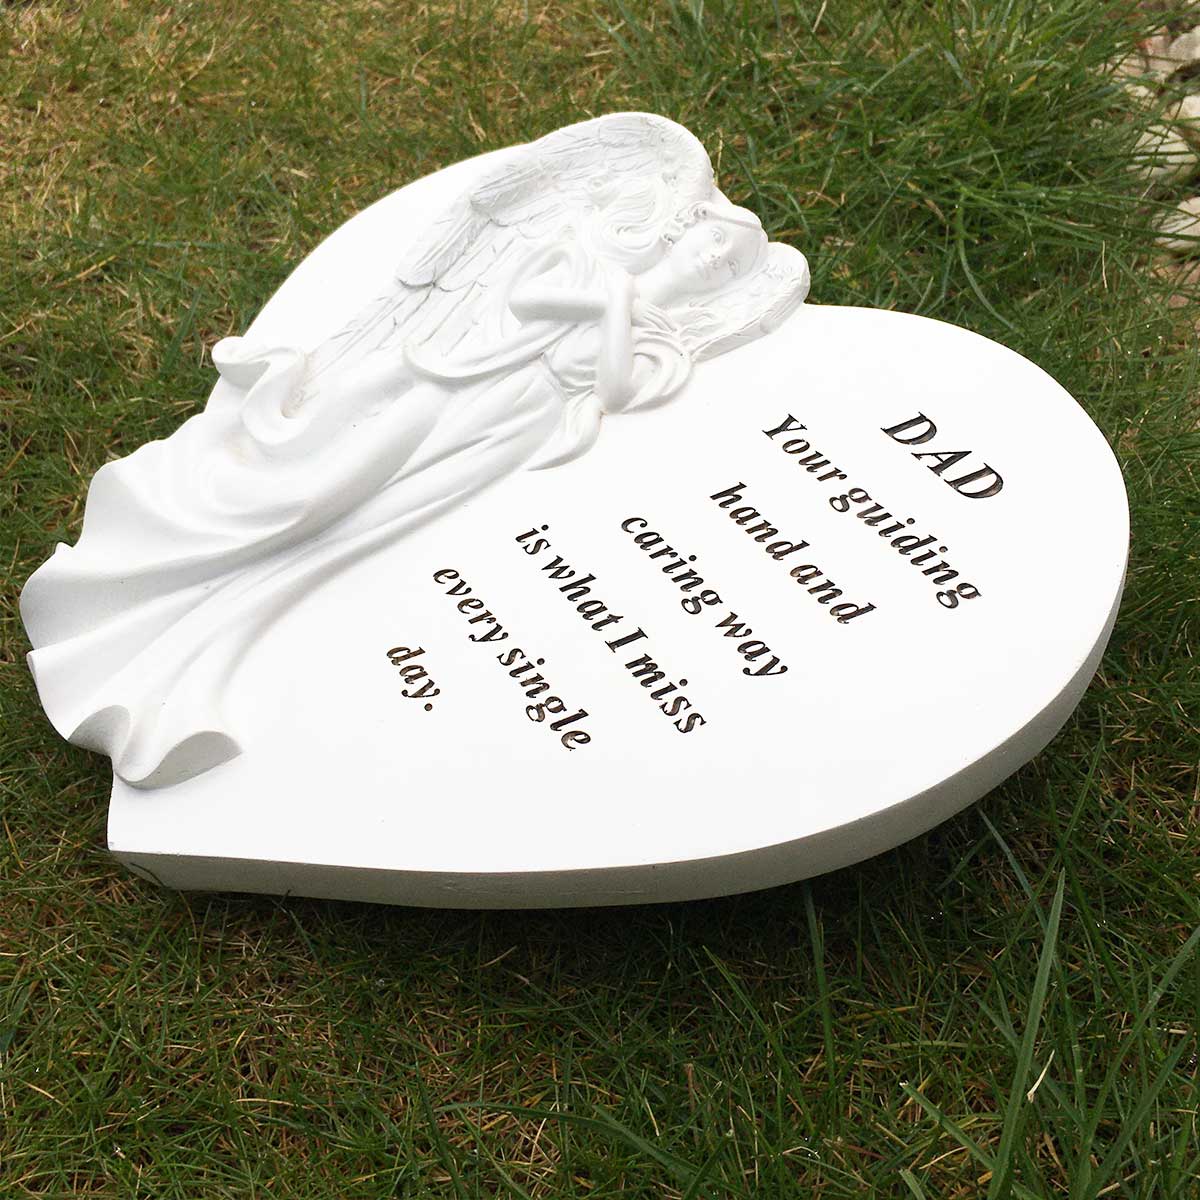 Angel Heart Outdoor Memorial - Dad